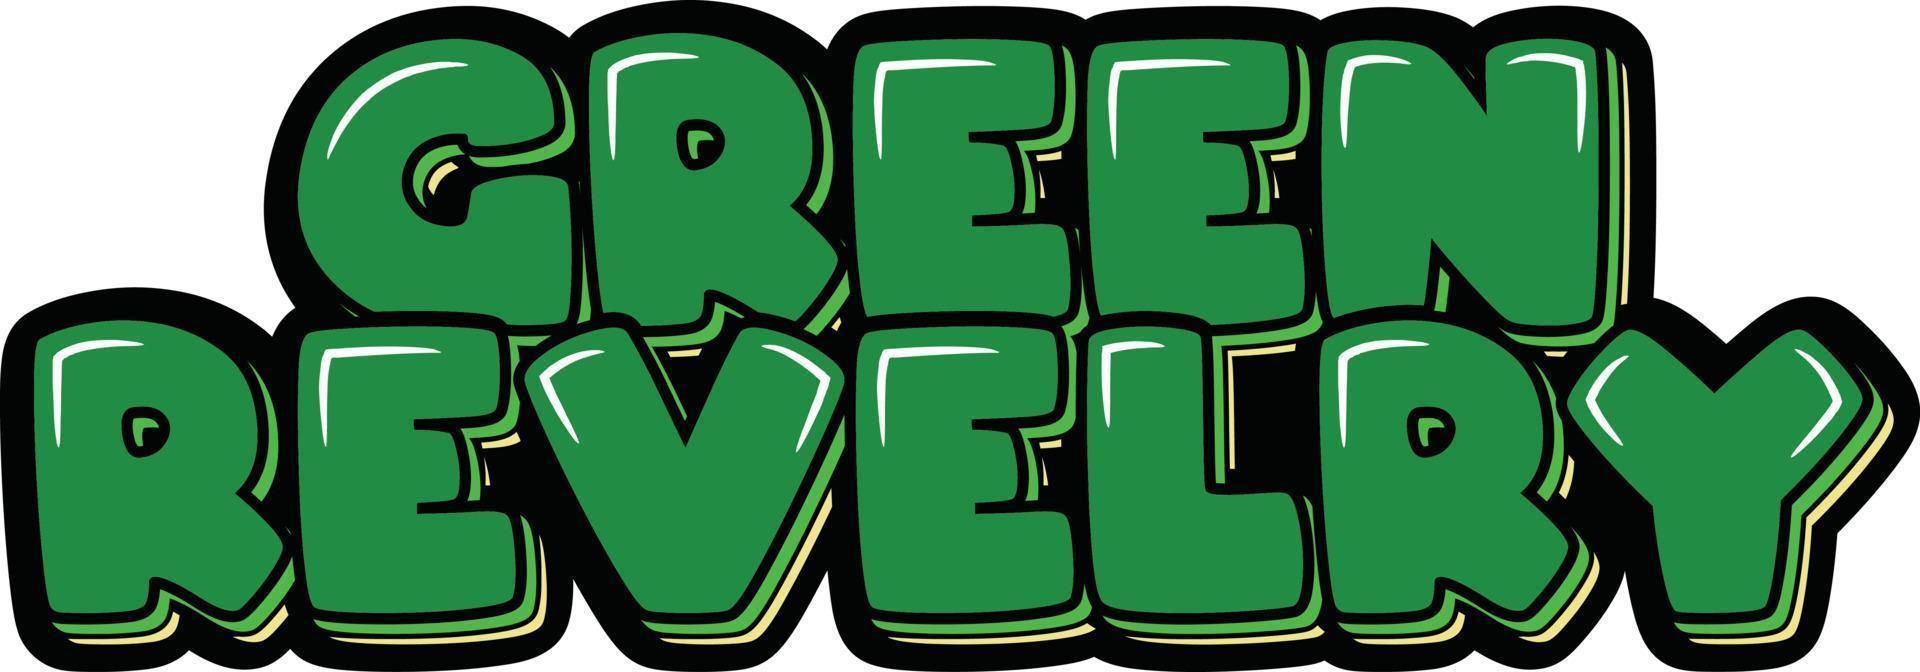 Green revelry lettering vector design